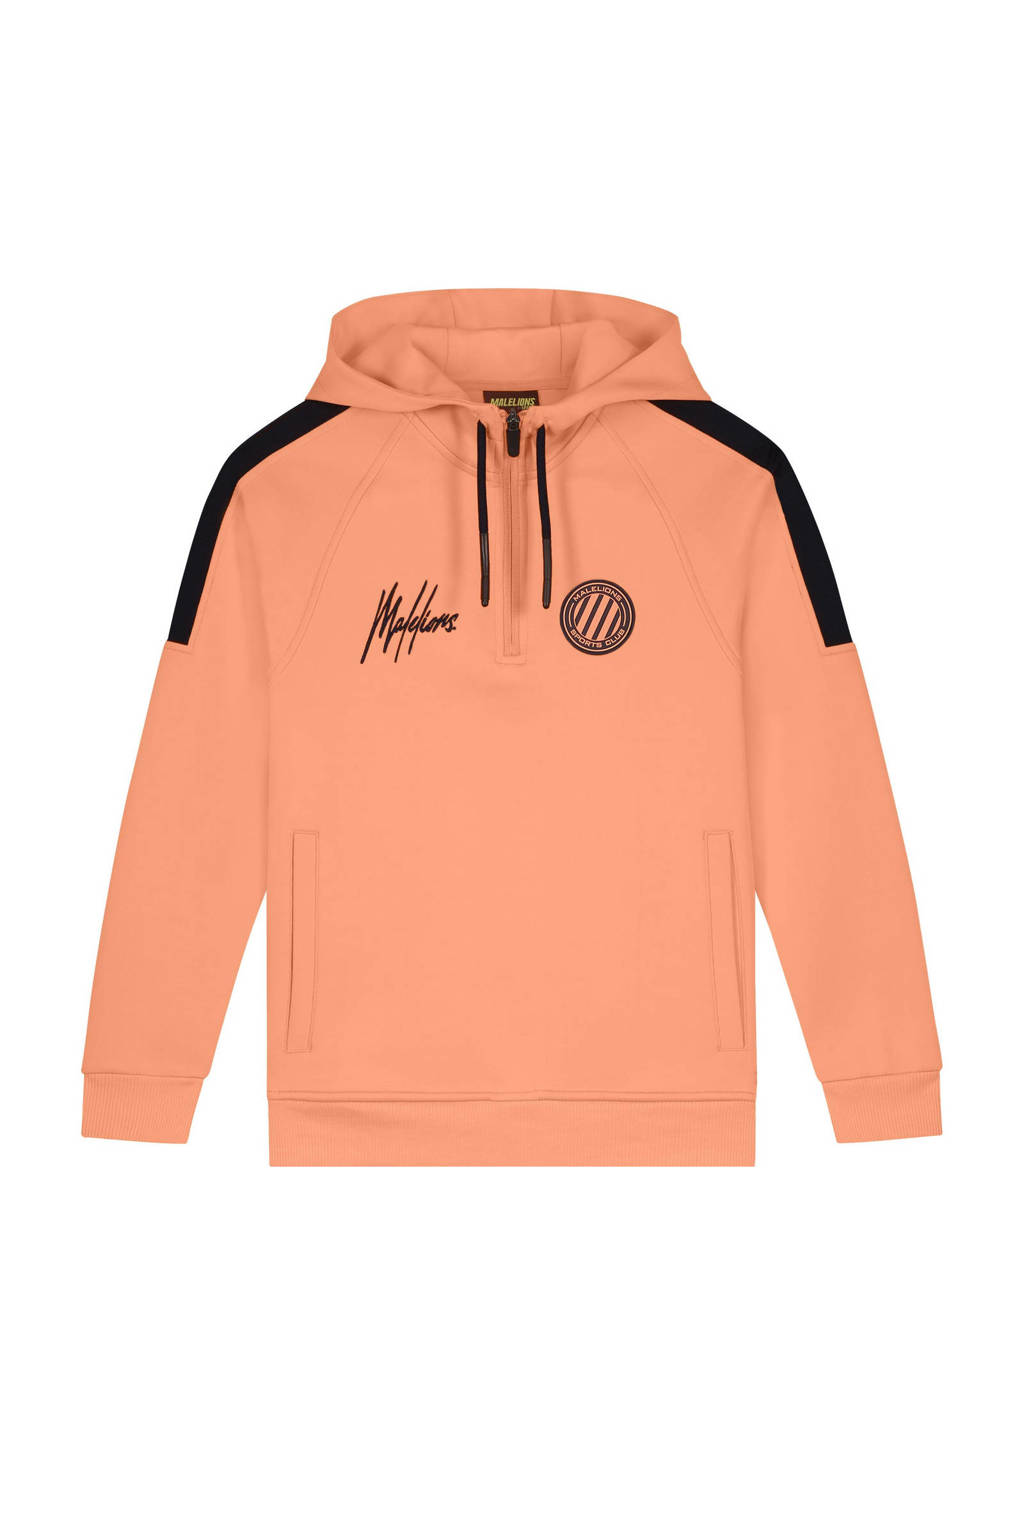 Malelions hoodie met logo oranje/donkerblauw